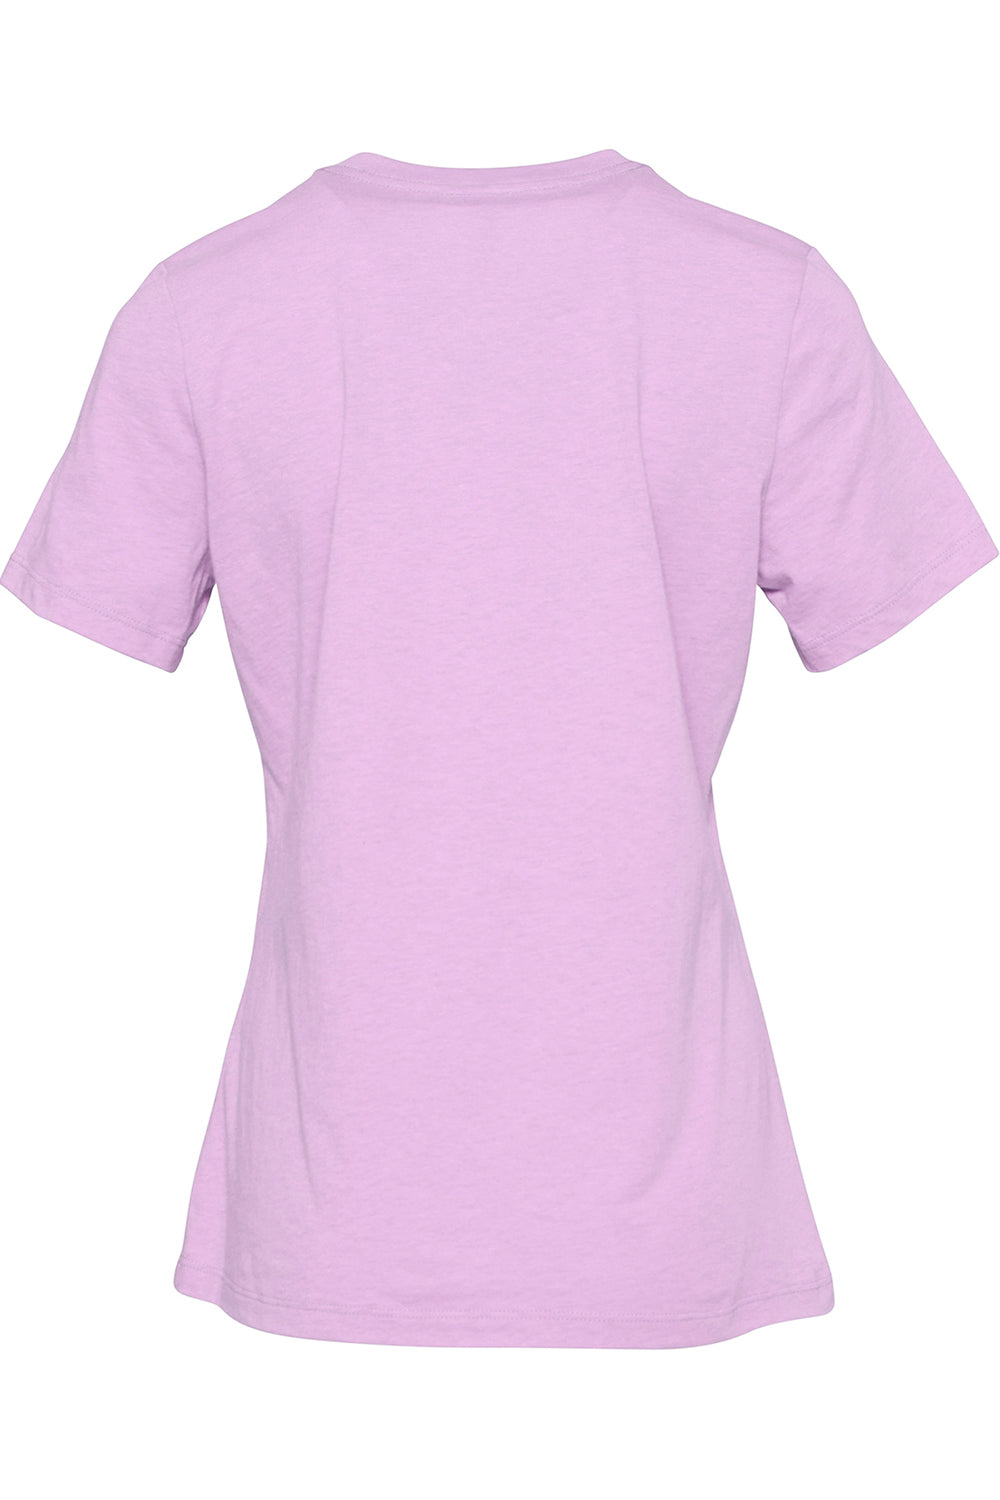 Bella + Canvas BC6400CVC/6400CVC Womens CVC Short Sleeve Crewneck T-Shirt Heather Prism Lilac Flat Back